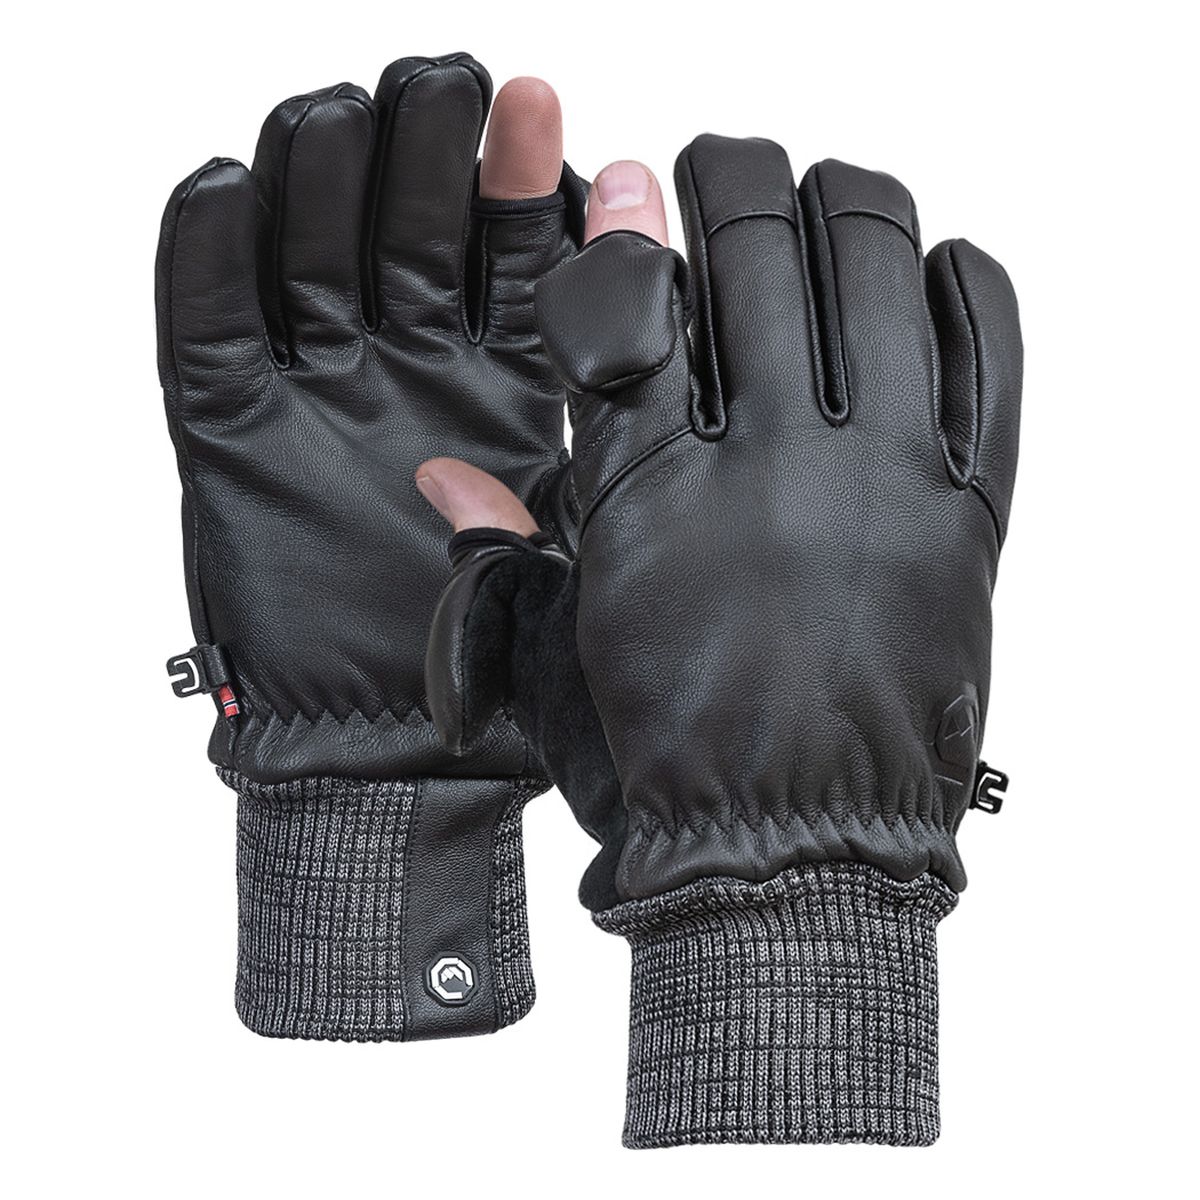 Vallerret Hatchet Leather Glove Black, Leder-Fotohandschuhe L Schwarz